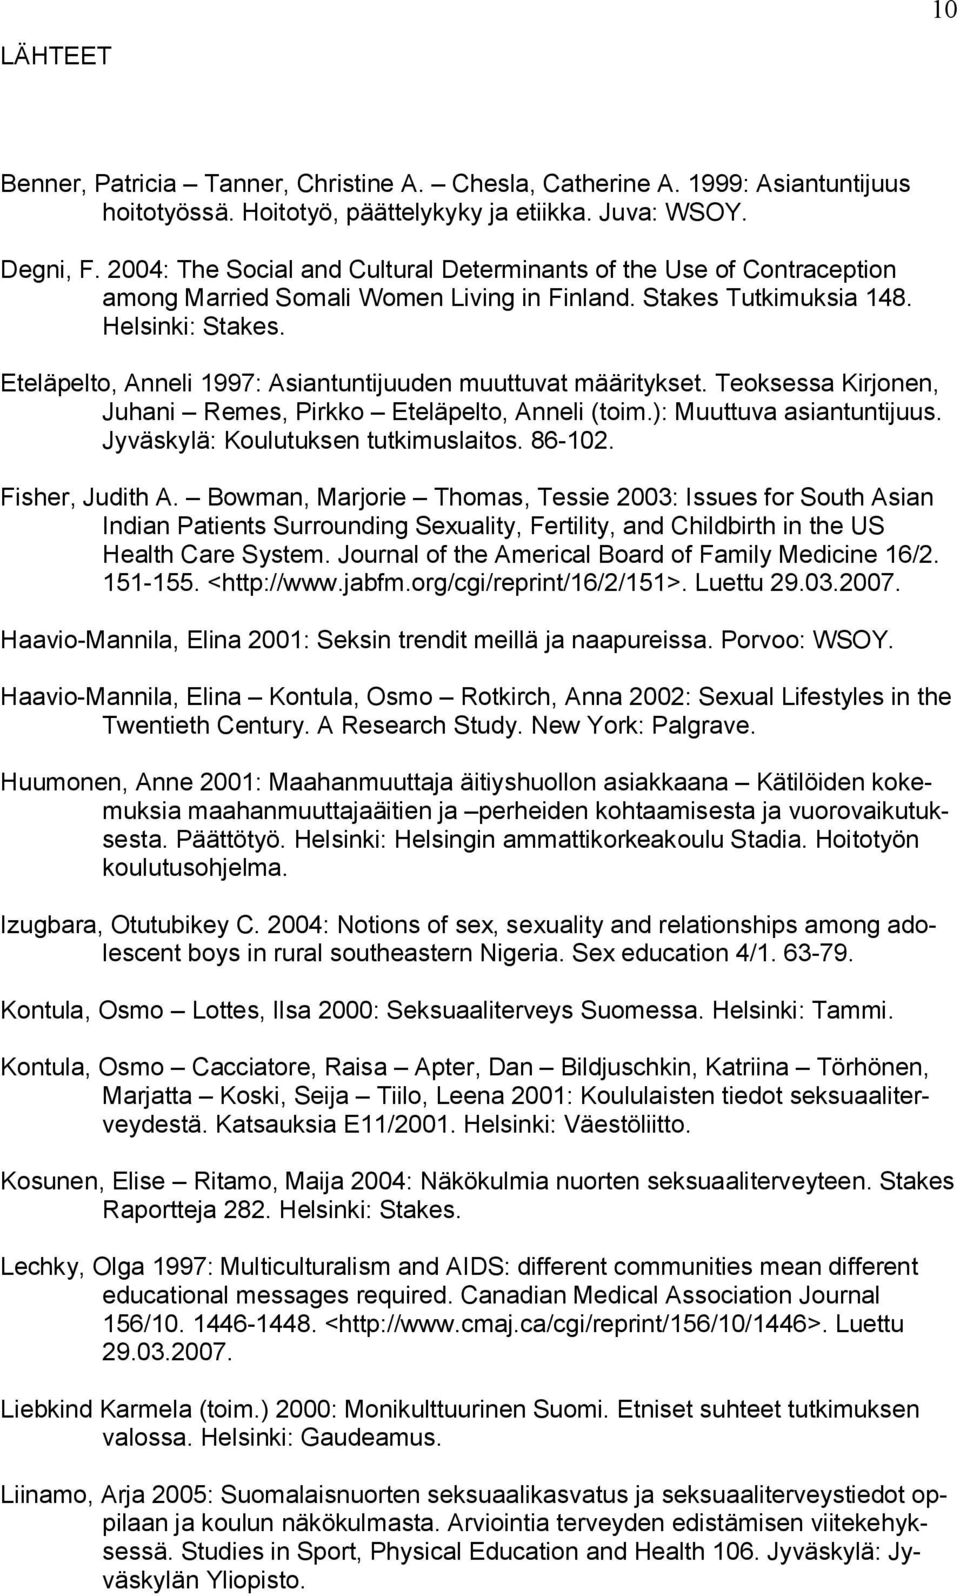 Eteläpelto, Anneli 1997: Asiantuntijuuden muuttuvat määritykset. Teoksessa Kirjonen, Juhani Remes, Pirkko Eteläpelto, Anneli (toim.): Muuttuva asiantuntijuus. Jyväskylä: Koulutuksen tutkimuslaitos.